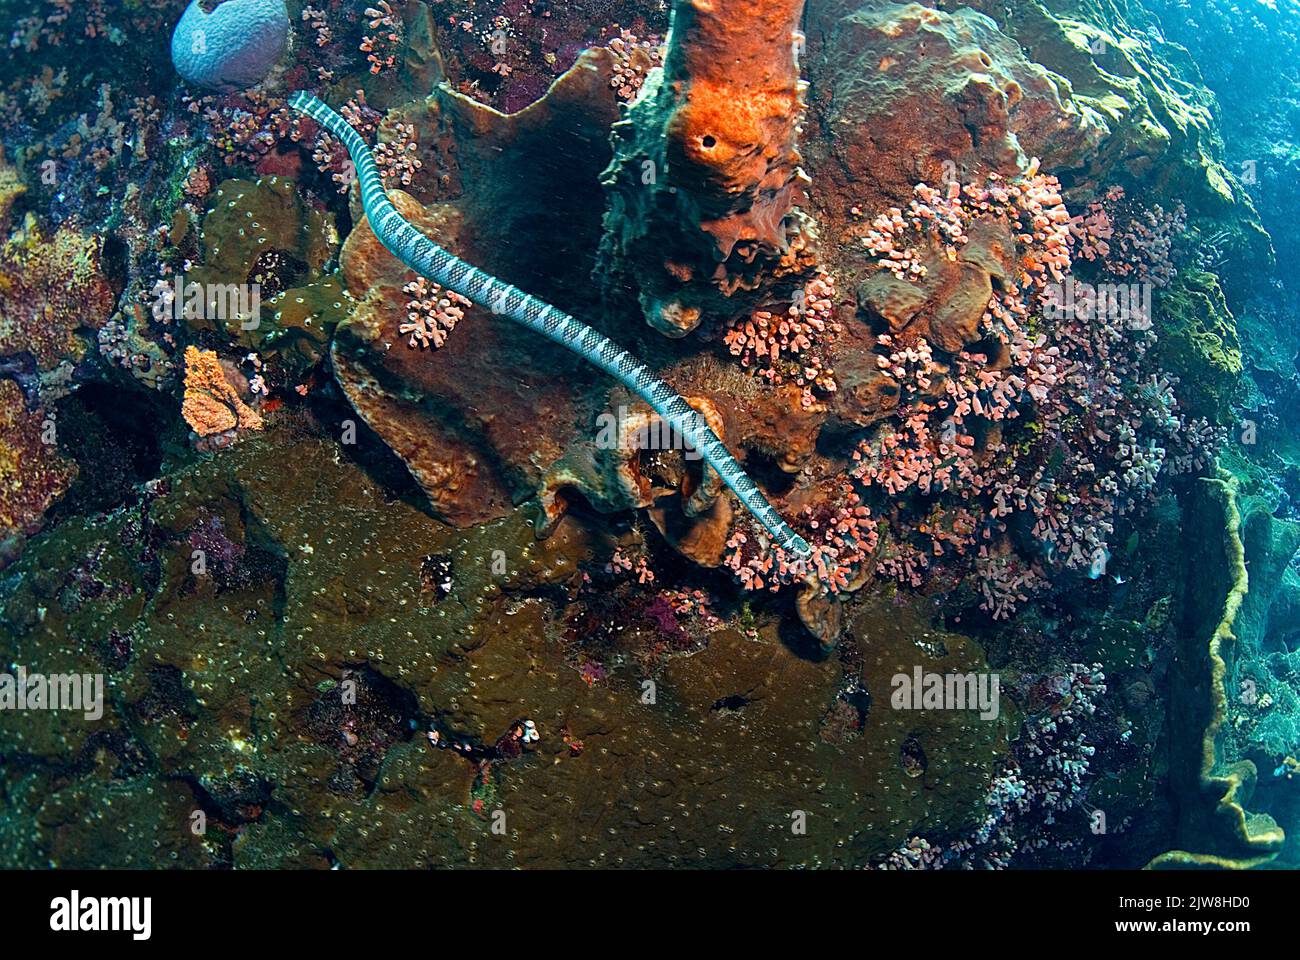 Serpiente marina anulada (Hydrophis cyanocinctus) También conocida como serpiente marina de banda azul, un tipo de serpiente marina venenosa, Raja Ampat, Indonesia, Océano Pacífico Foto de stock